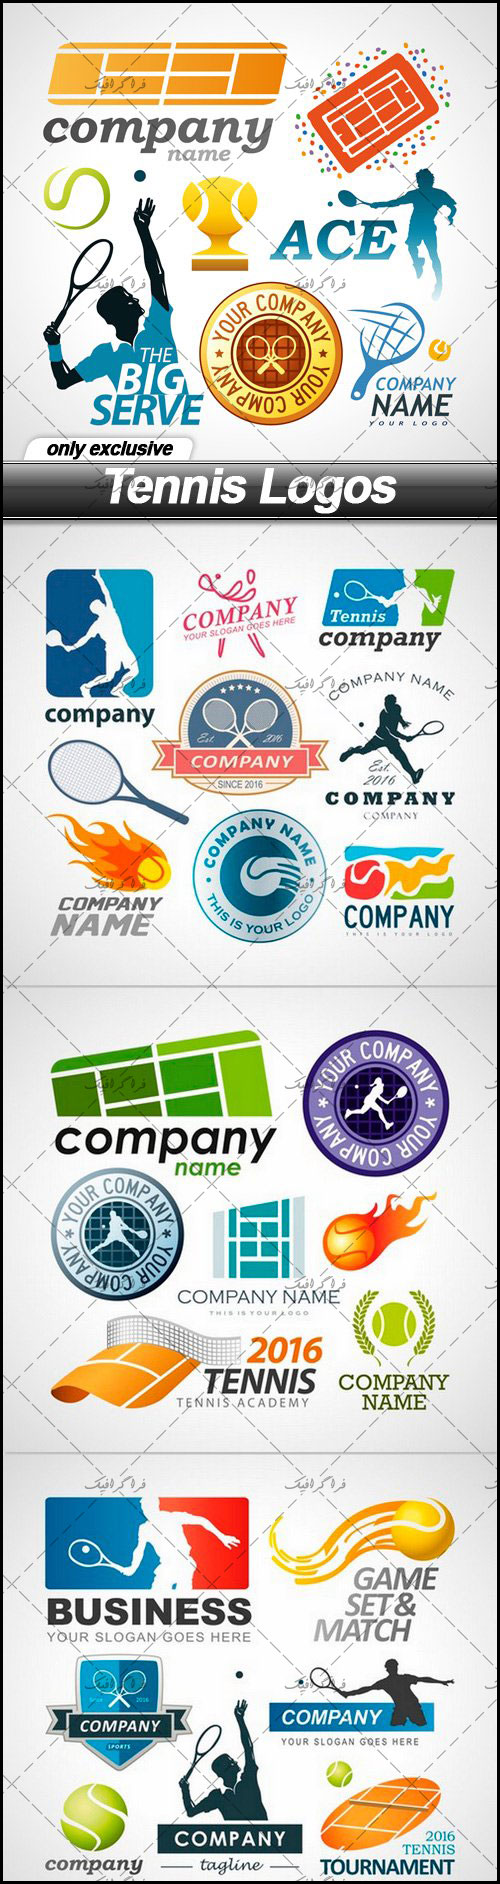 دانلود لوگو های ورزش تنیس - Tennis Logos